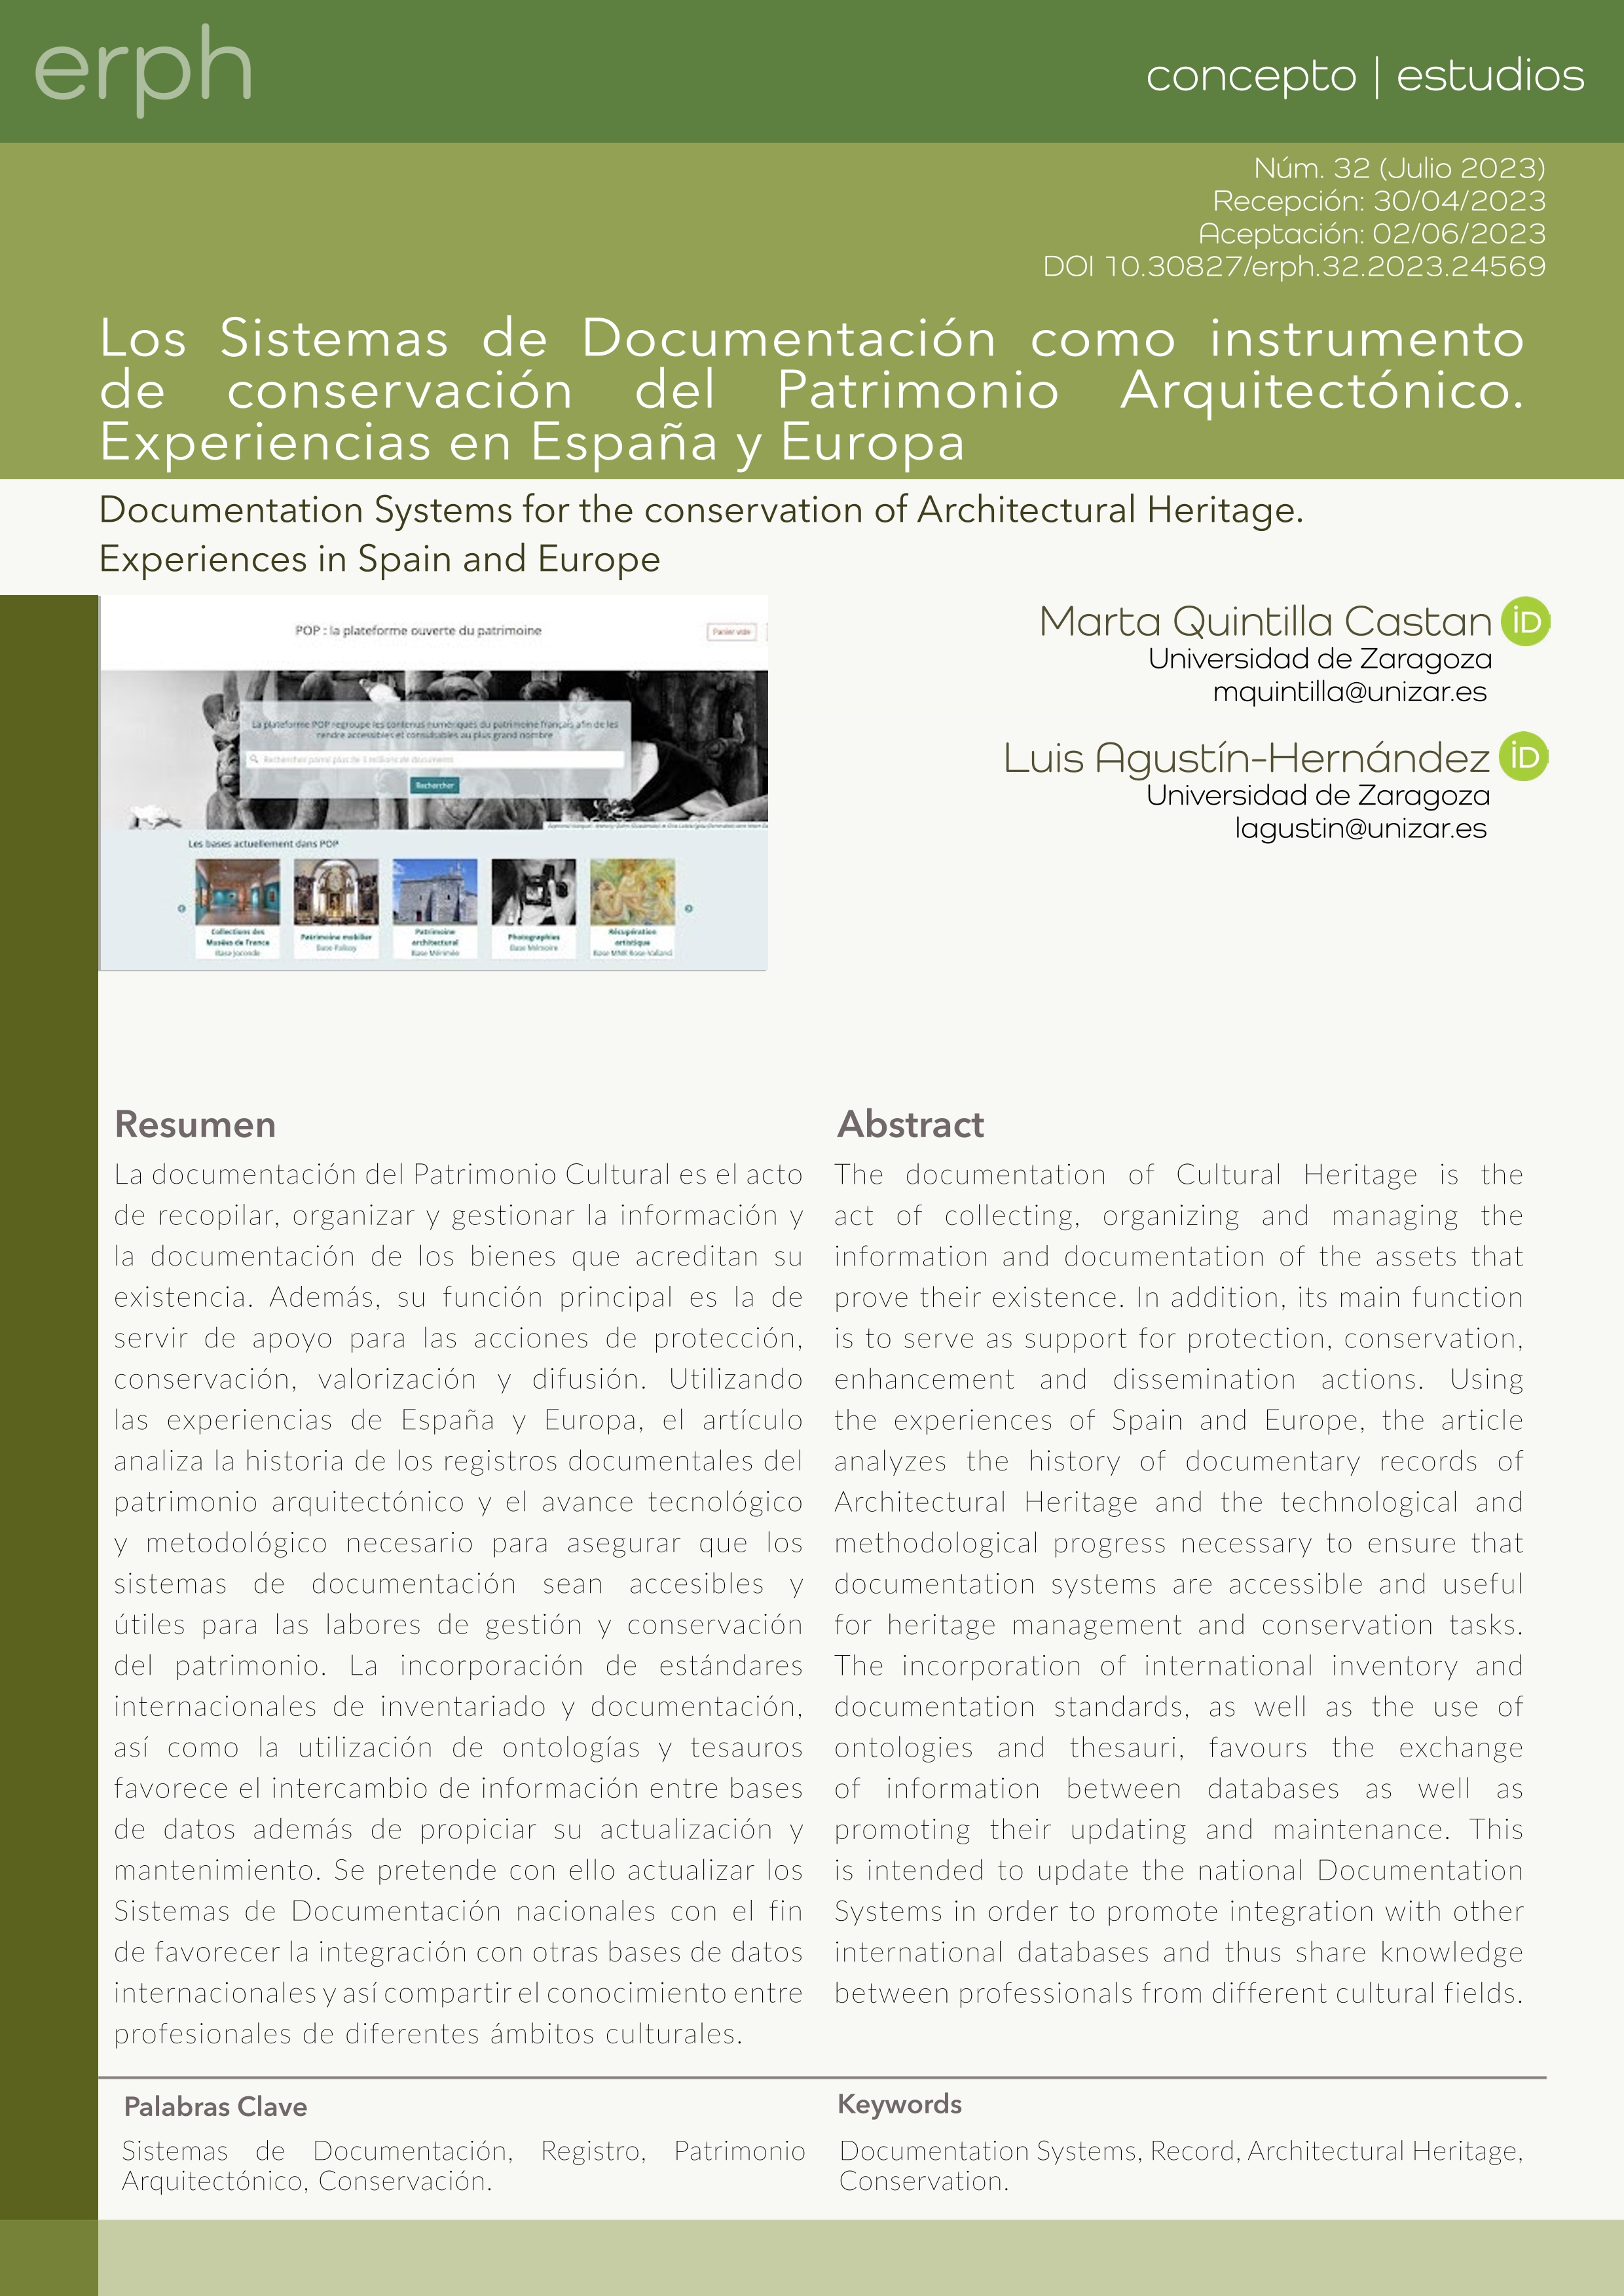 Los Sistemas de Documentación como instrumento de conservación del Patrimonio Arquitectónico. Experiencias en España y Europa